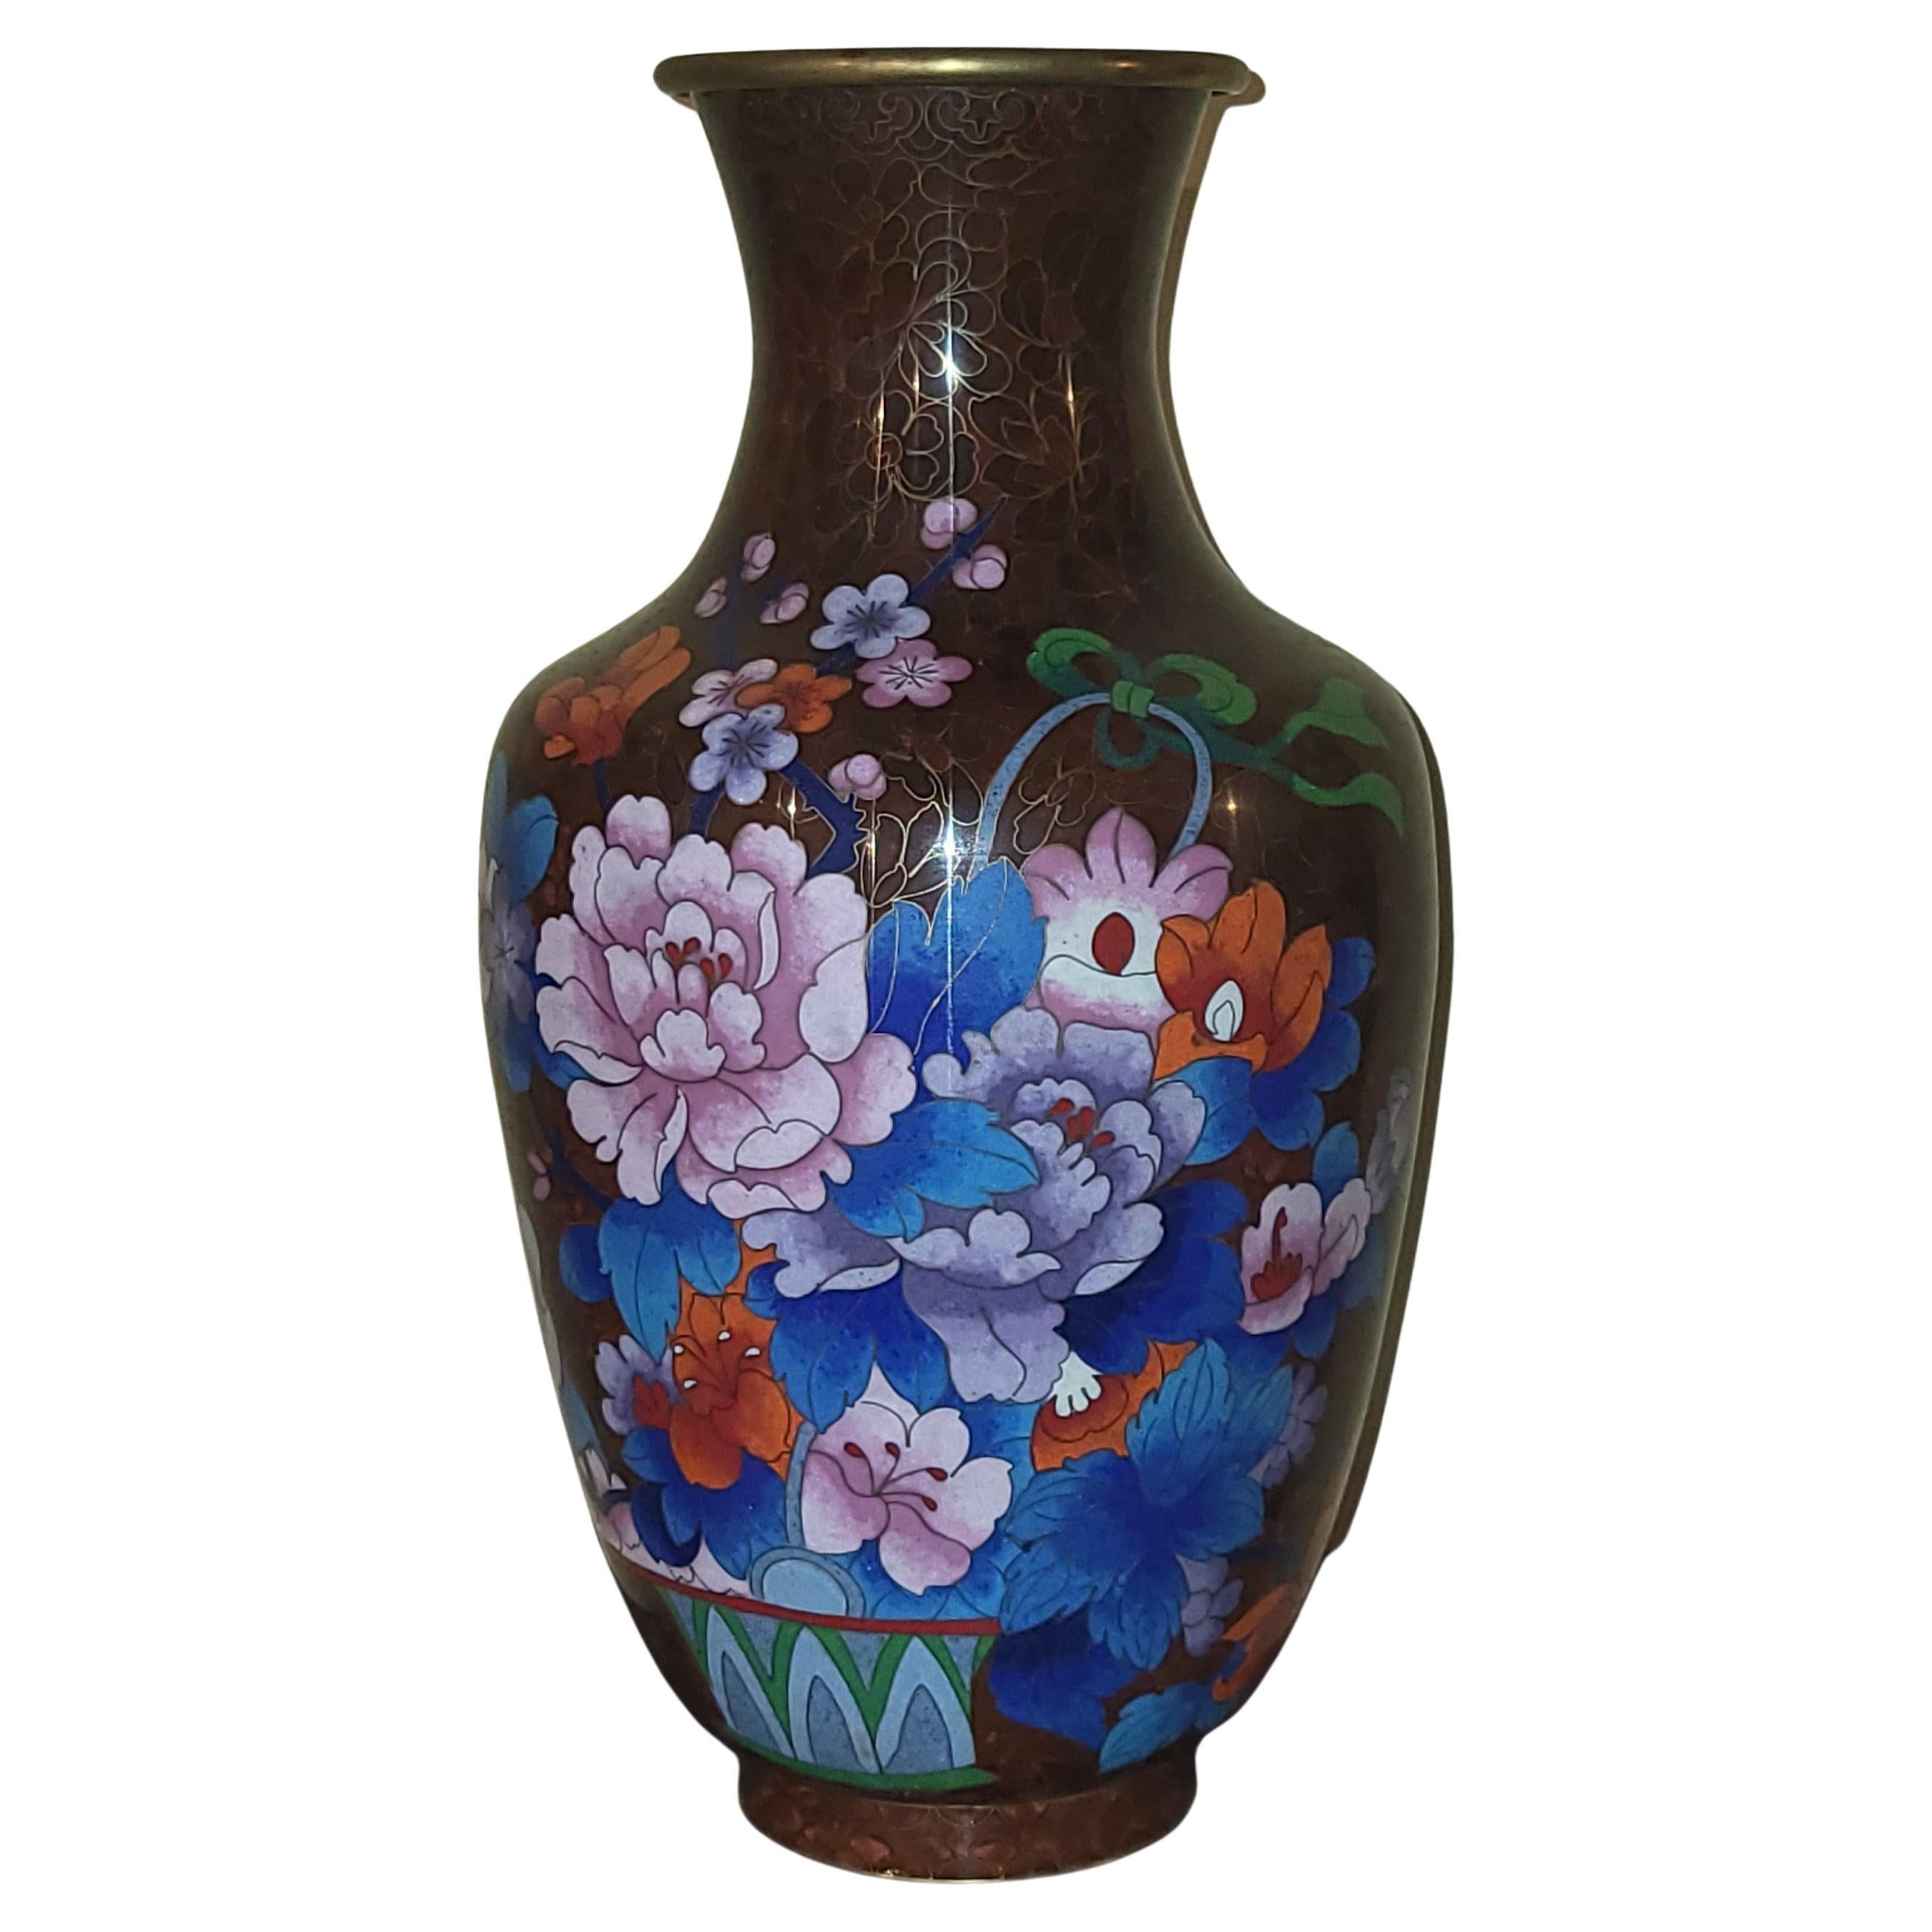 Grand vase des années 1950/60 provenant de Chine, en émaux cloisonnés sur cuivre avec un beau décor de fleurs.
Le cerclage au col est en laiton doré , permet un beau contraste avec le fond brun chocolat du vase ainsi les couleurs florales sont mises